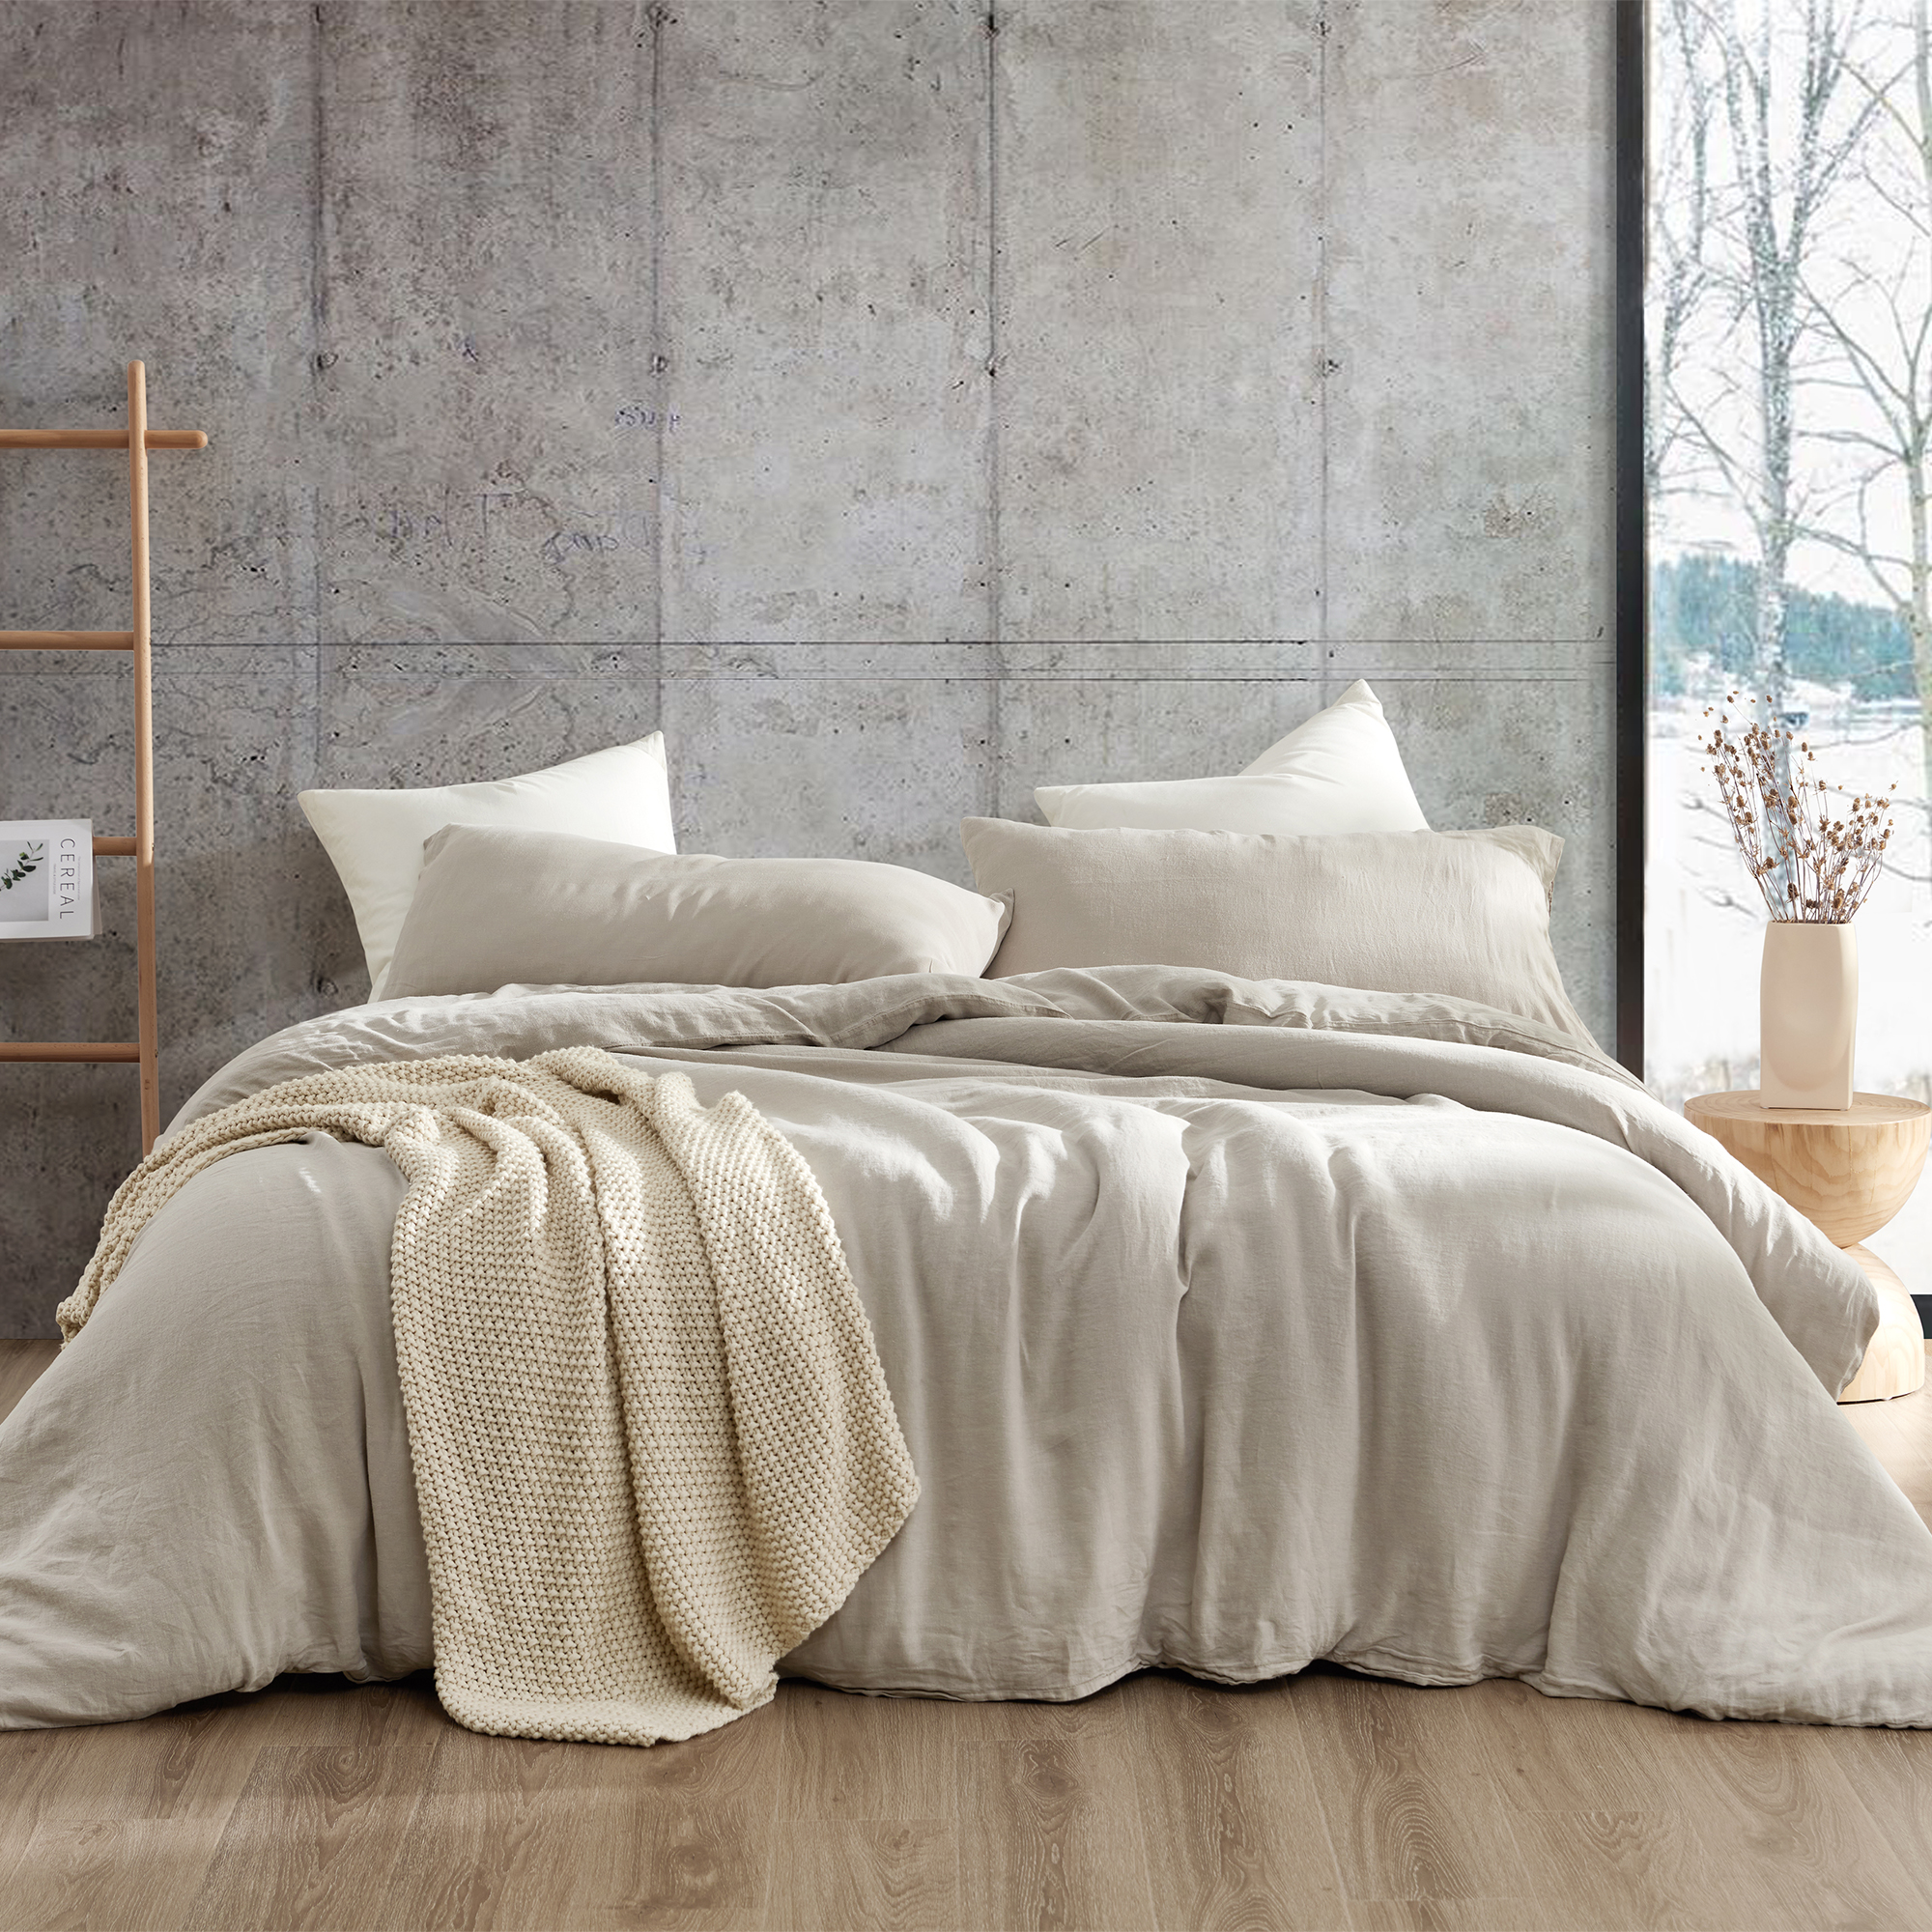  Bedsure Linen Oversized King Duvet Cover - Soft